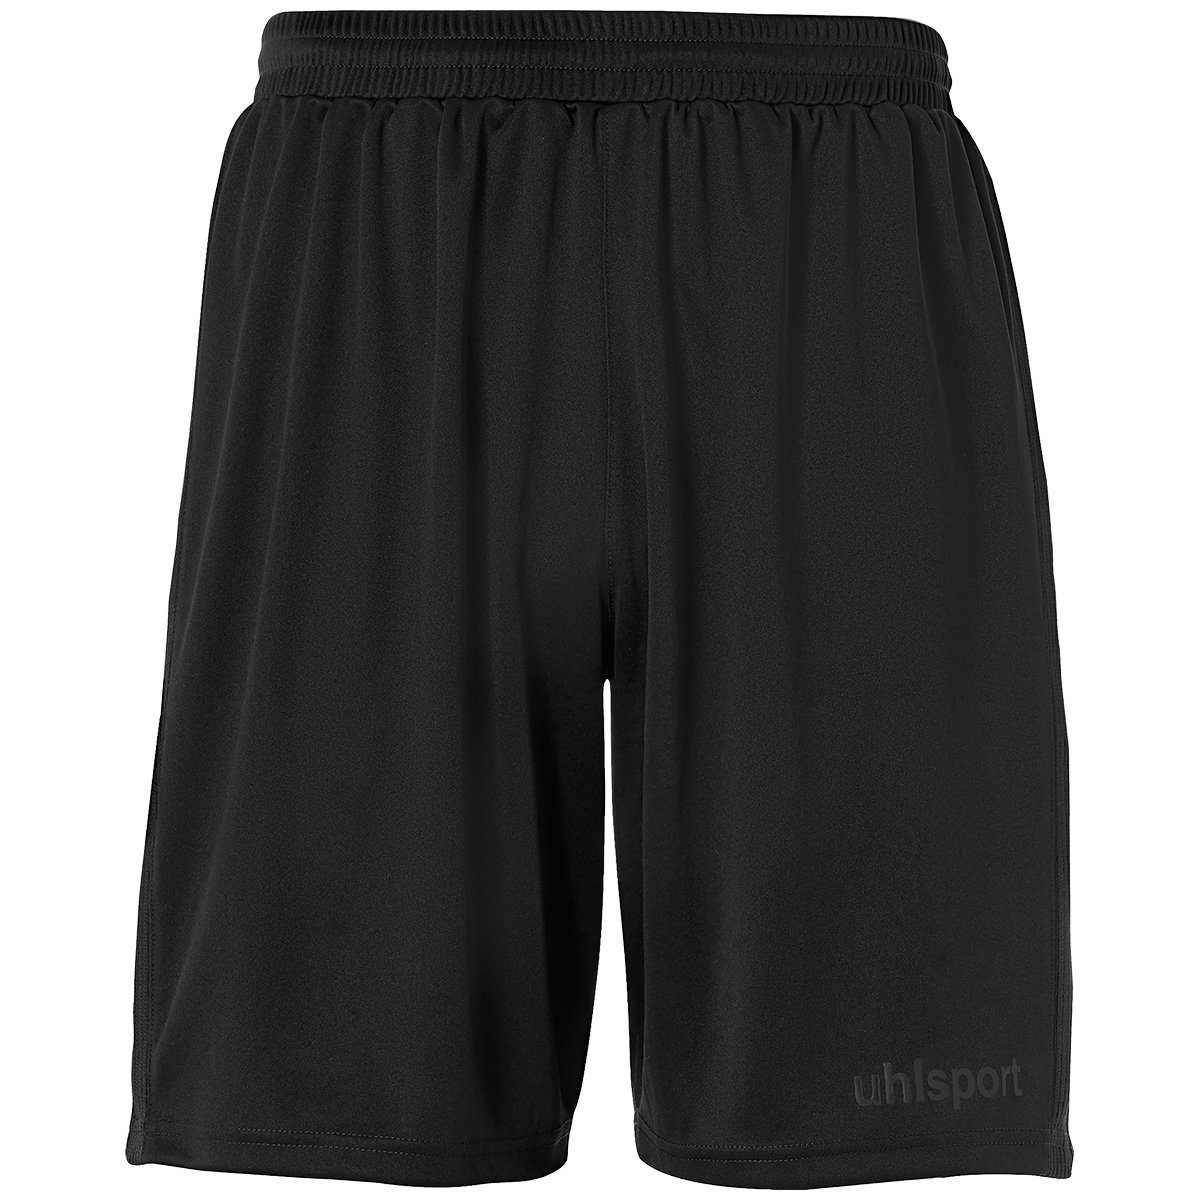 uhlsport Shorts uhlsport Shorts PERFORMANCE SHORTS schwarz | Shorts